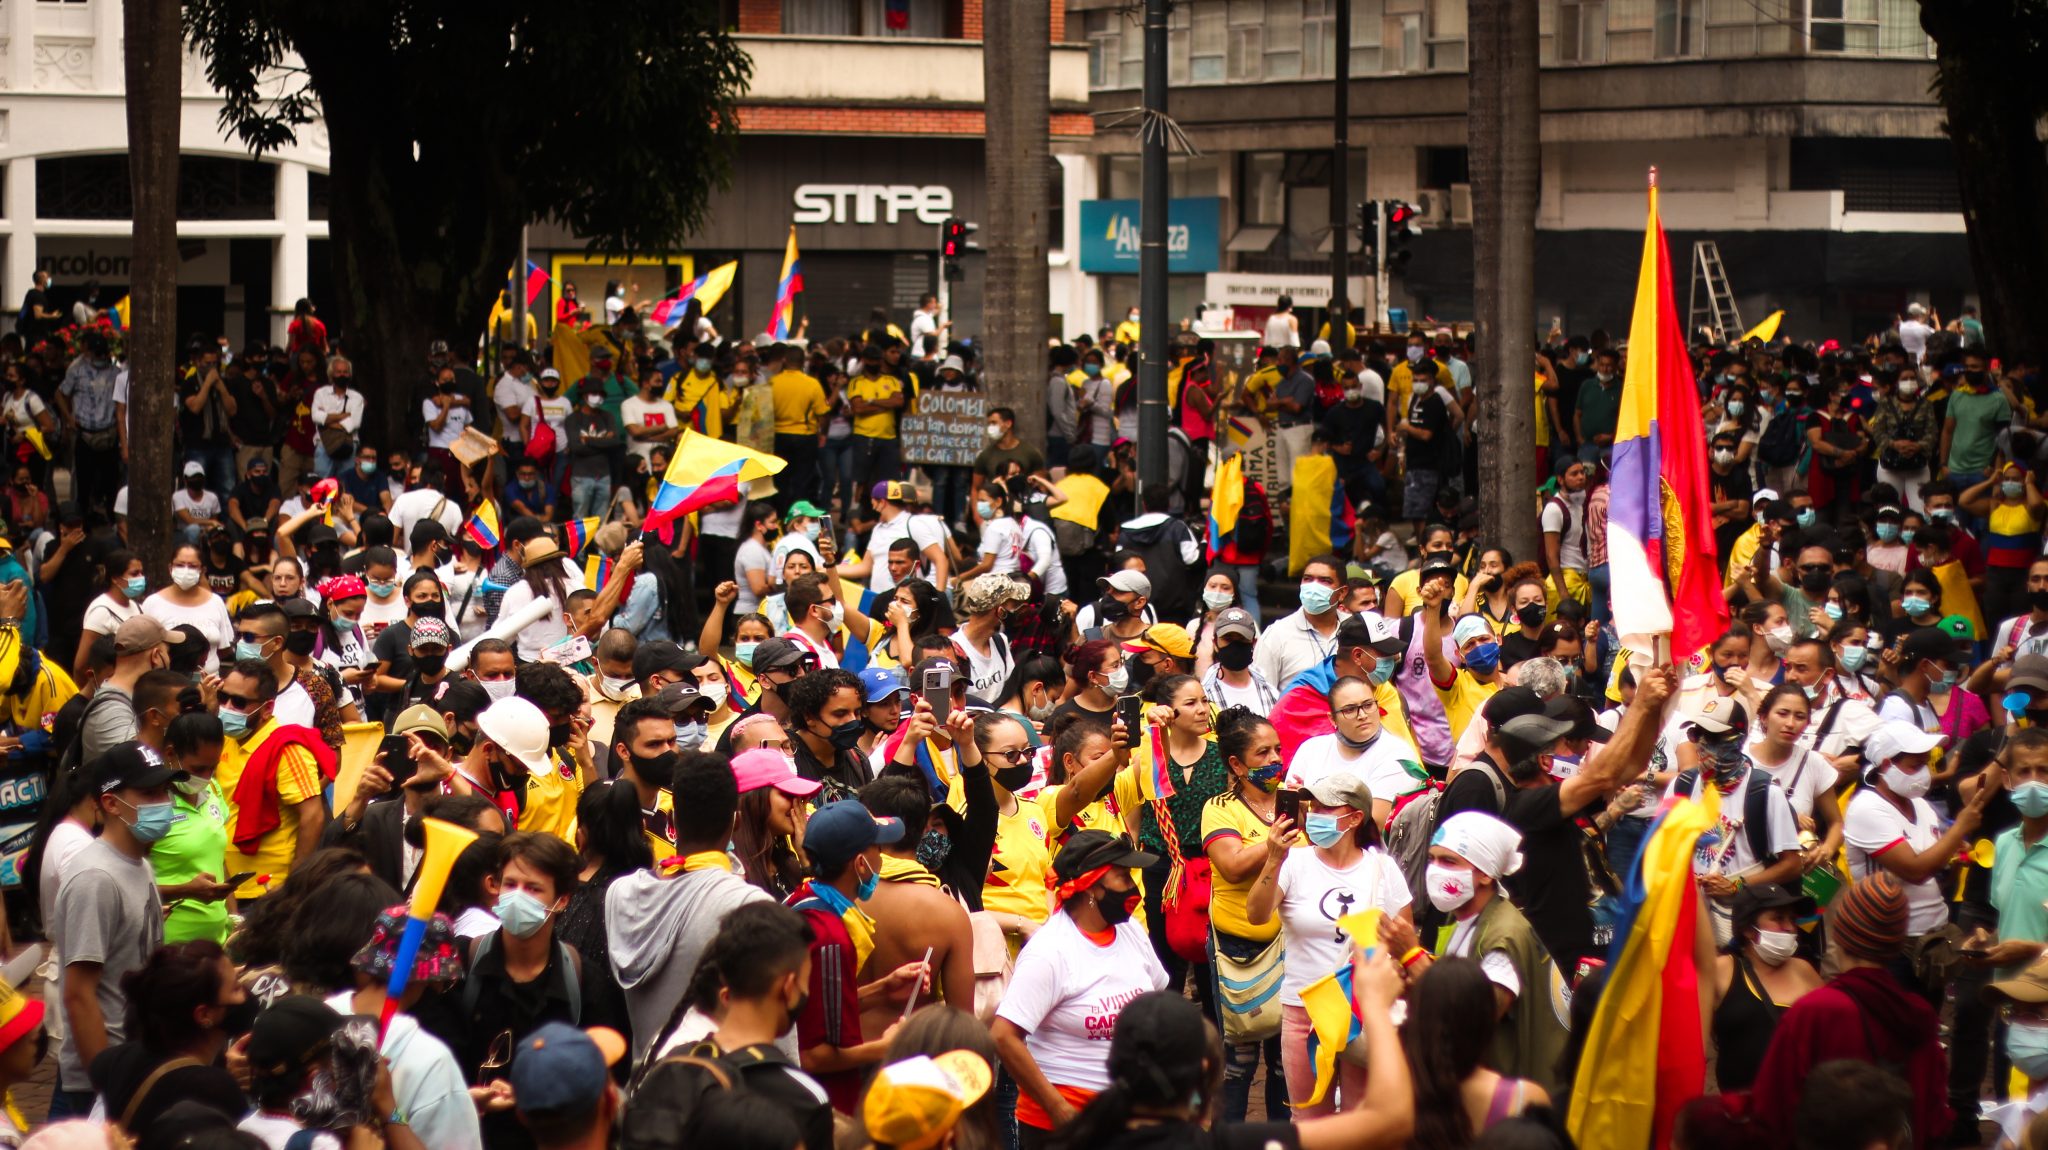 Como en otros lugares del país, en Pereira, el 28 de abril, cuando empezó el paro nacional, una multitud se reunió par manifestarse contra la reforma tributaria. En la imagen, concentración en la Plaza de Bolívar. Foto: Margarita Rojas.